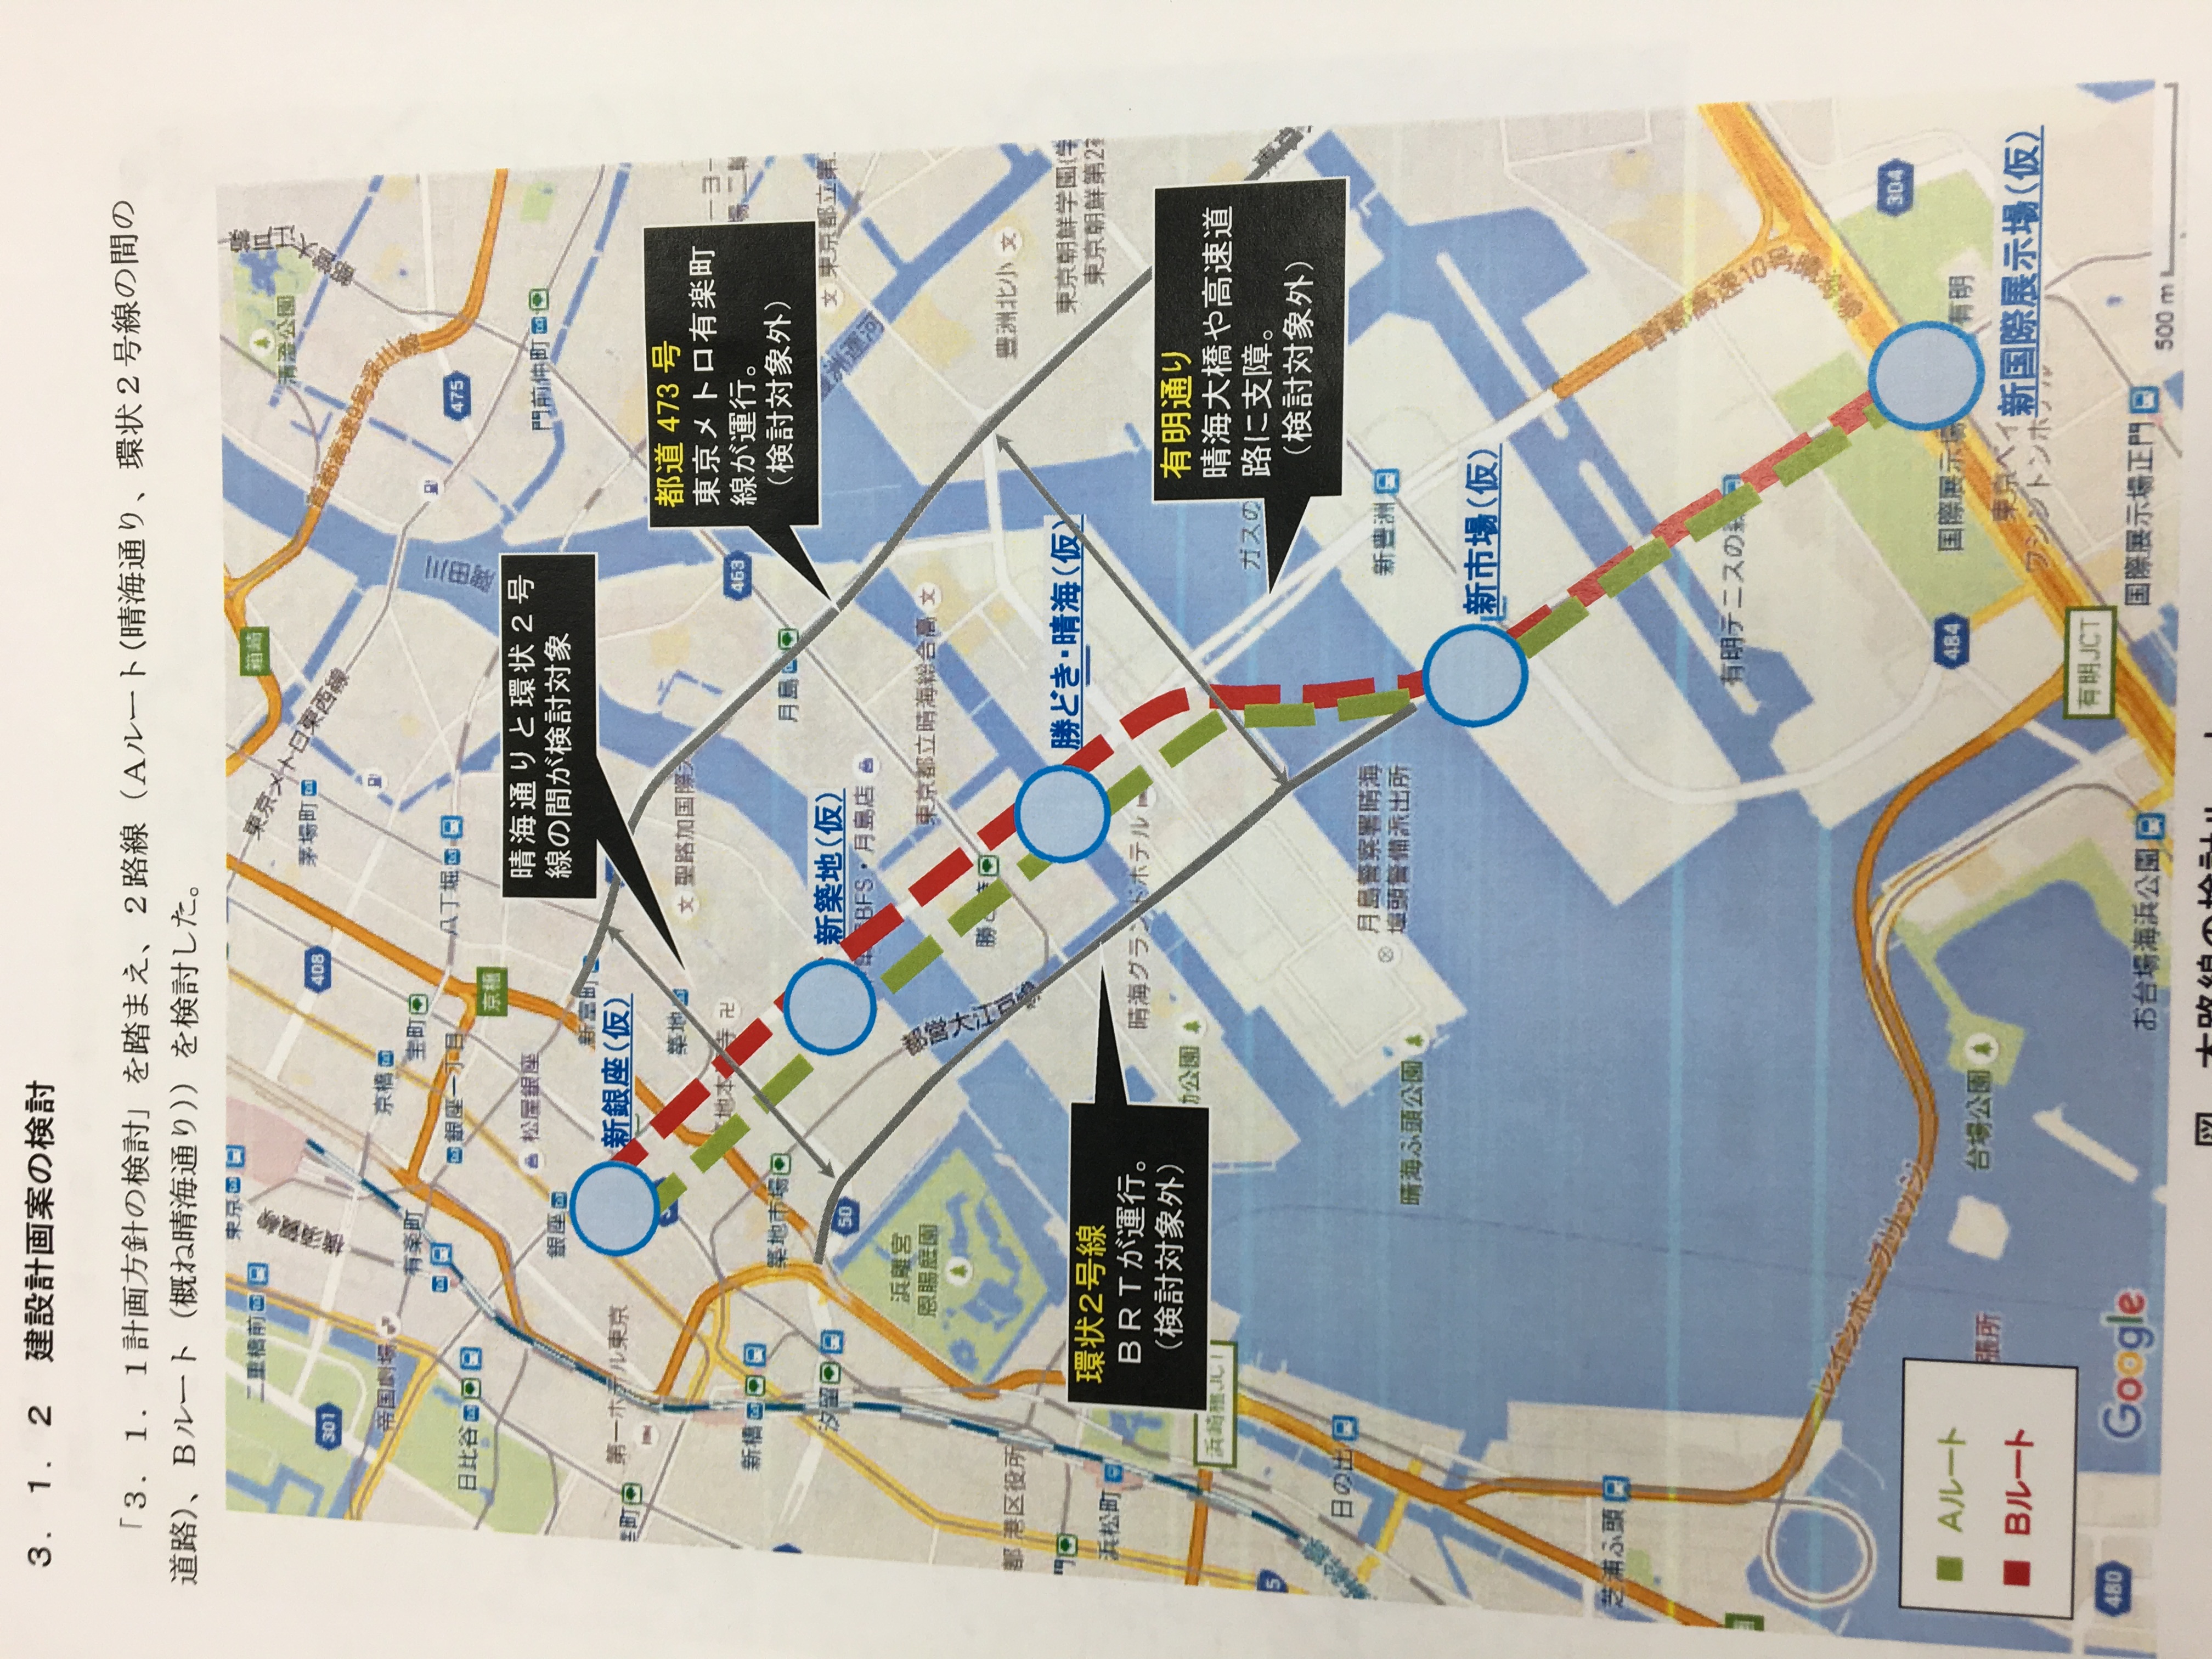 東京都のホームページでは地下鉄検討の様子...